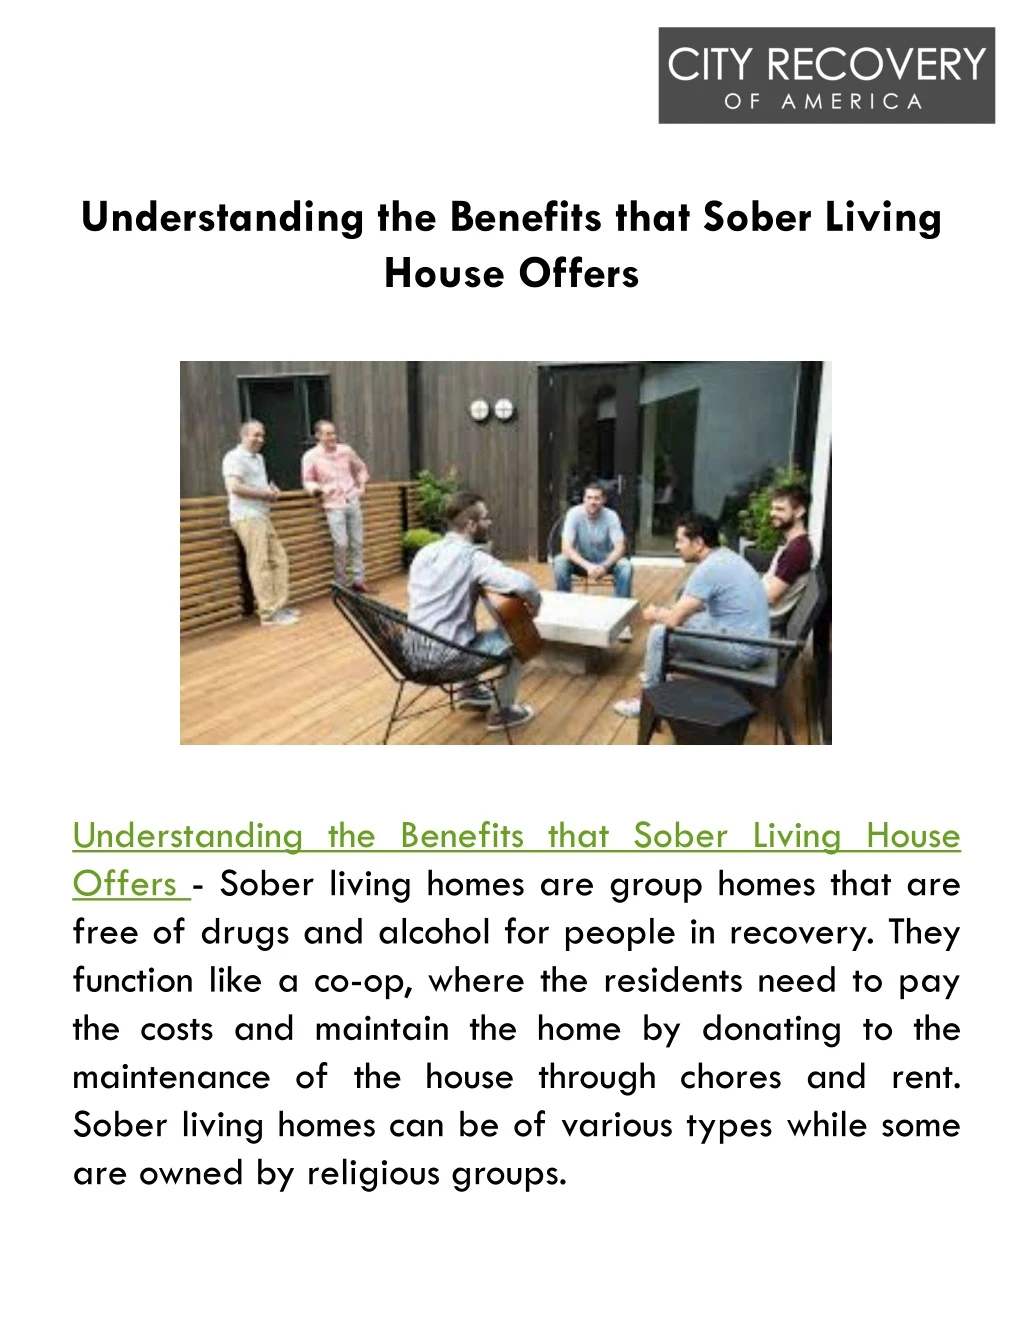 understanding the benefits that sober living